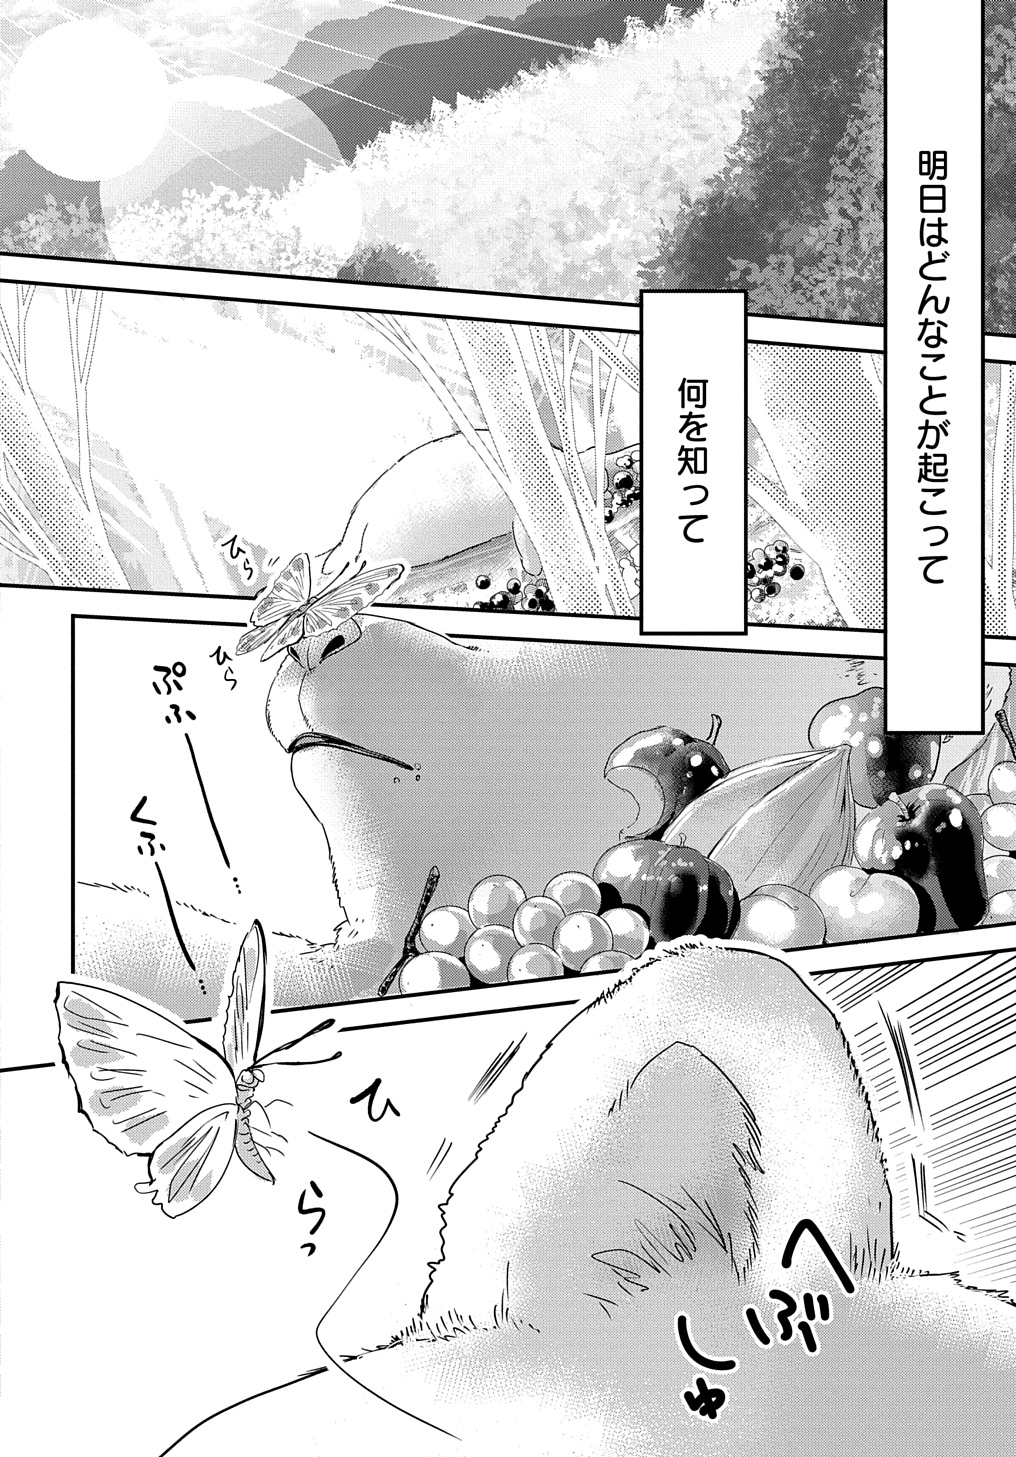 Konyakusha no Uwaki Genba wo Michatta no de Hajimari no Kane ga narimashita - Chapter 10 - Page 32